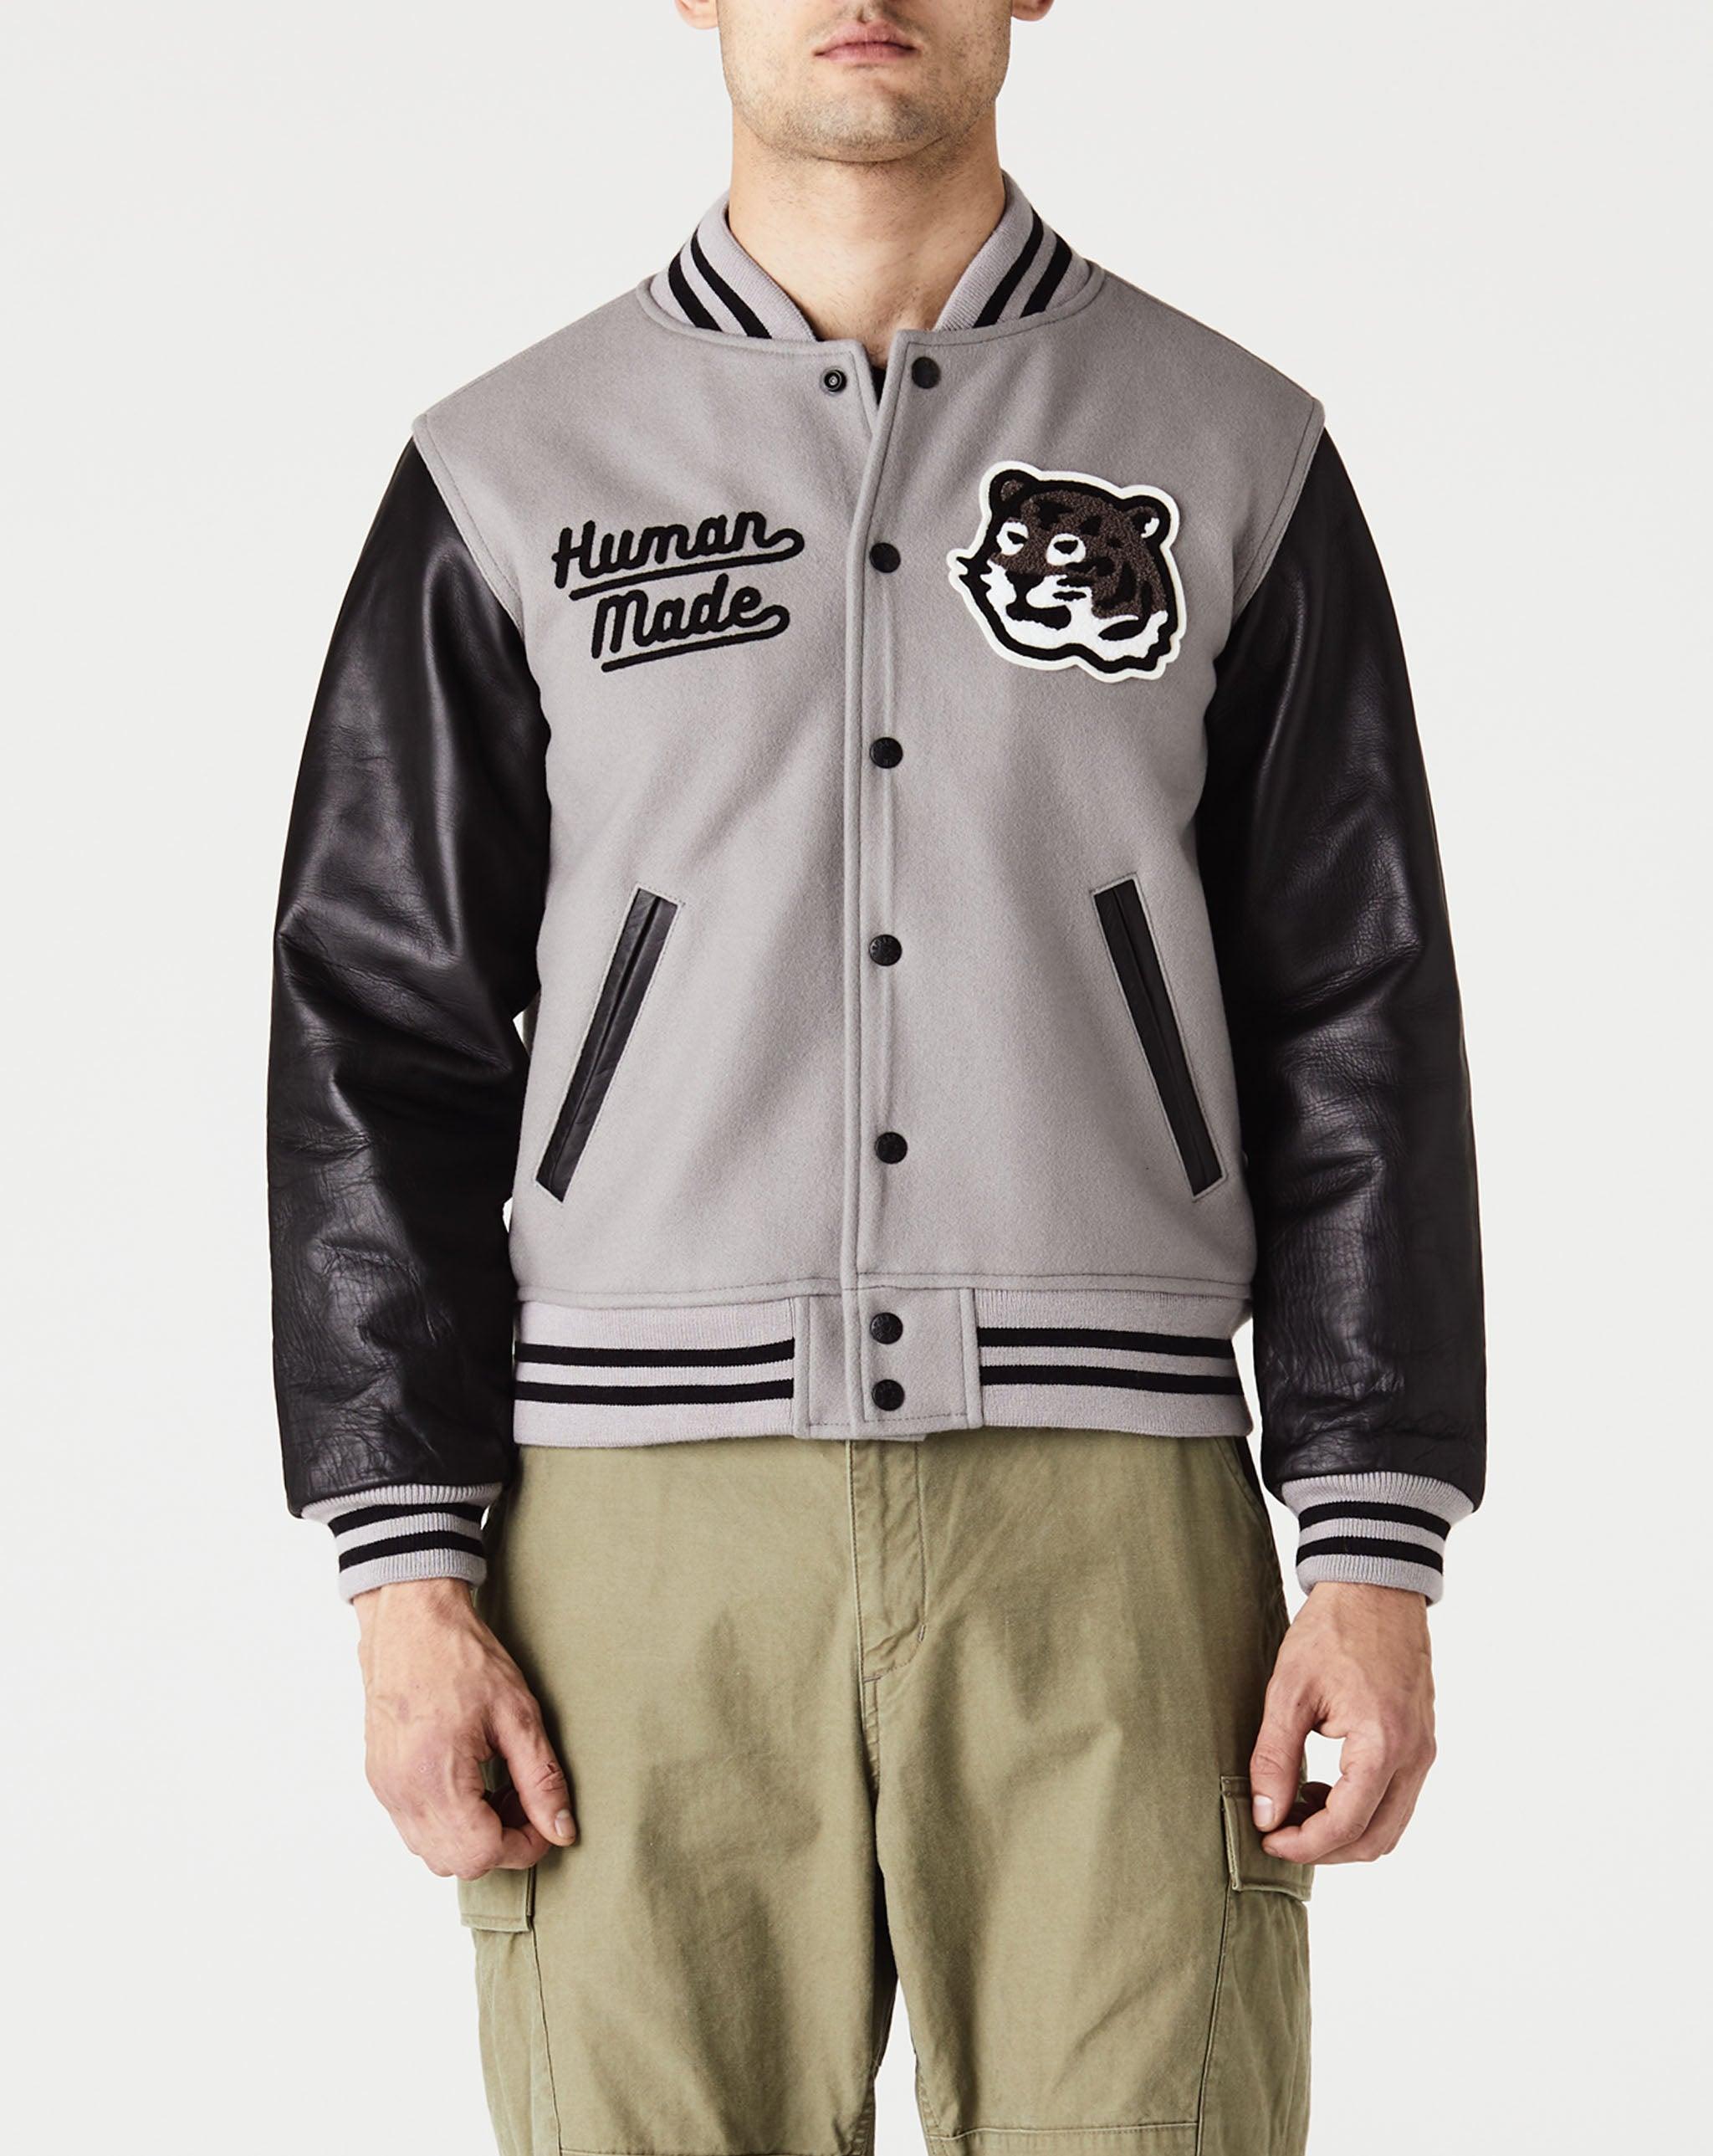 Buy Human Made Quilted Liner Jacket 'Black' - HM24JK013 BLAC